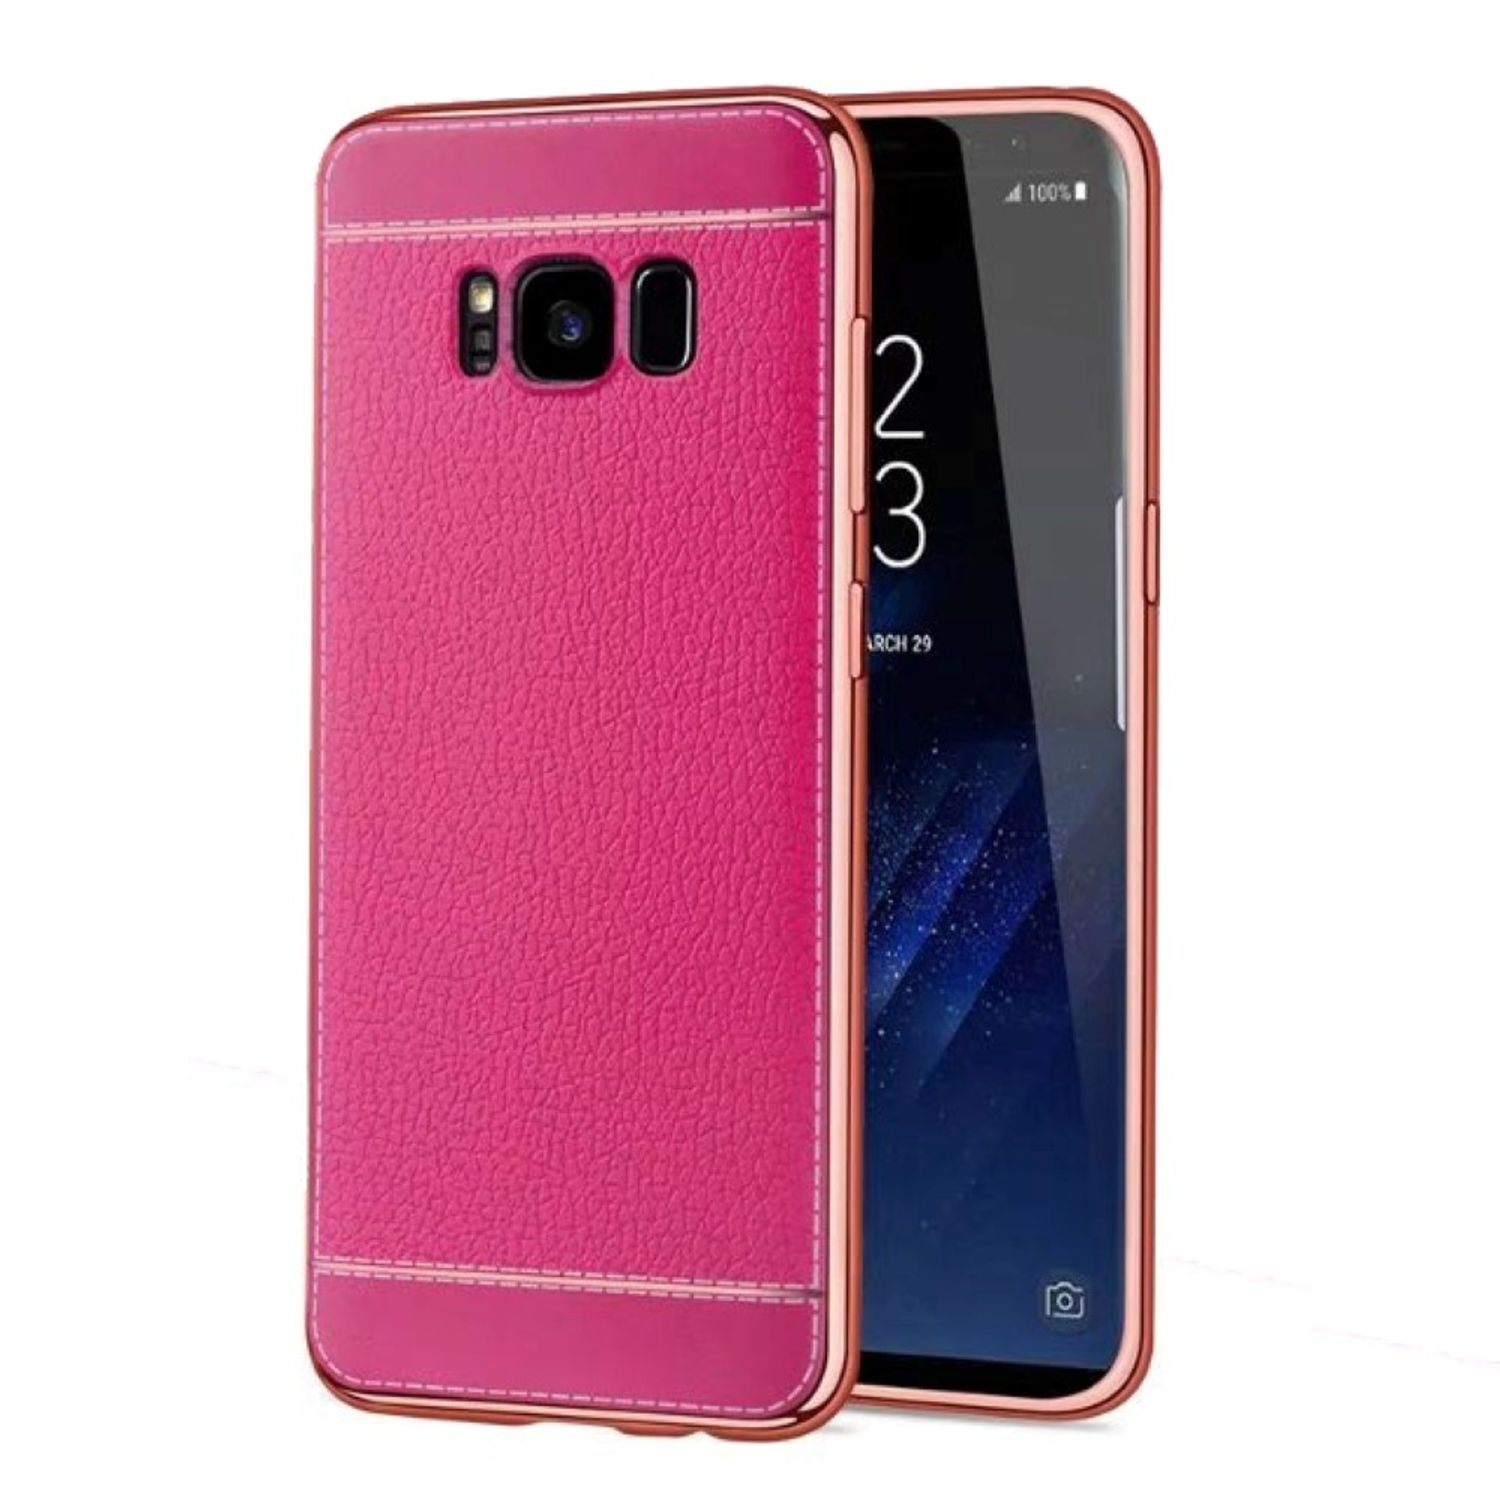 Samsung, DESIGN KÖNIG Rosa Galaxy Backcover, Schutzhülle, S6,